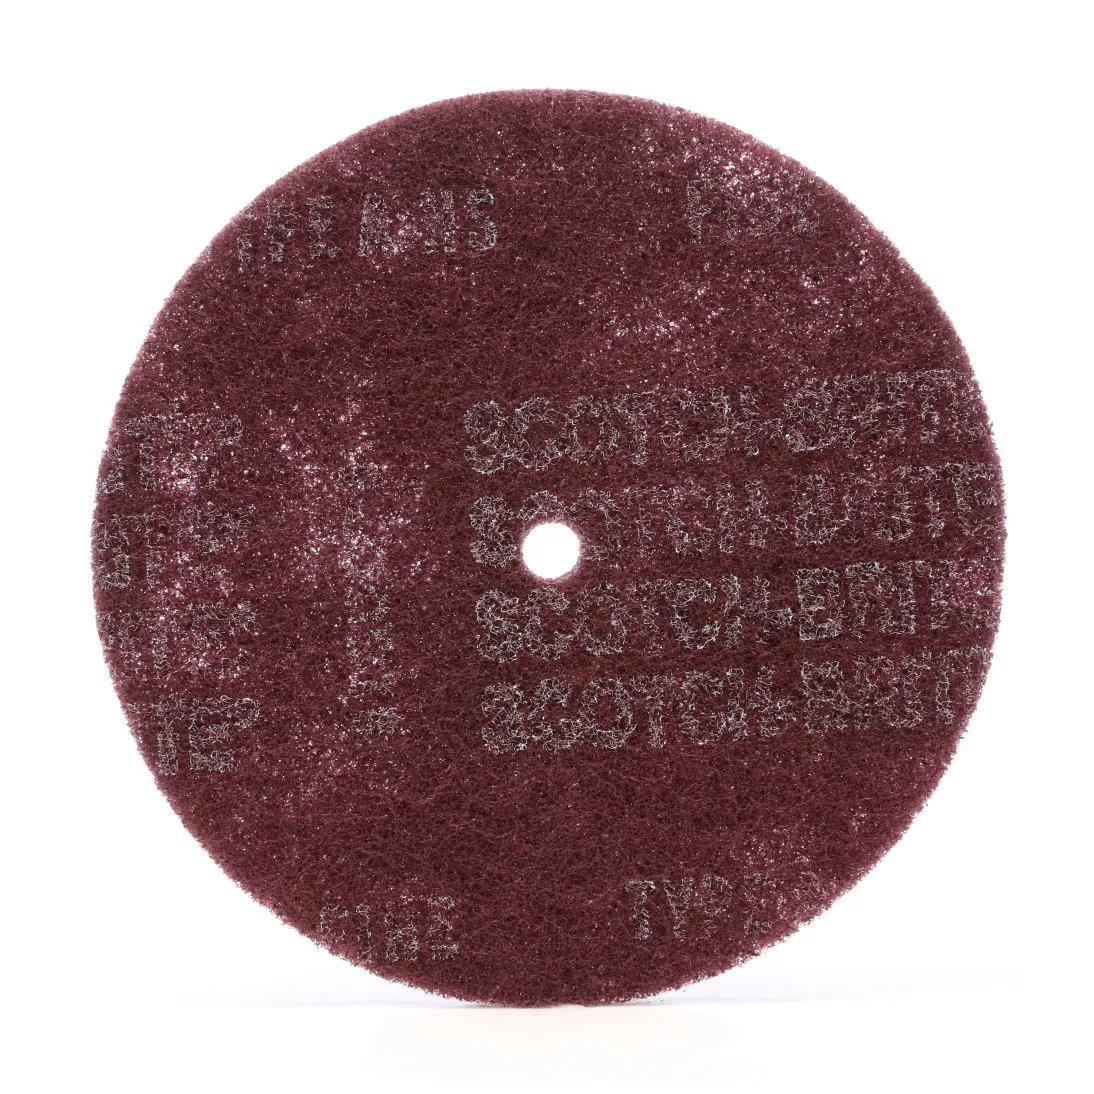 Scotch-Brite™ High Strength Disc, HS-DC, A/O Medium, 12 in x 7/8 in, 25
ea/Case